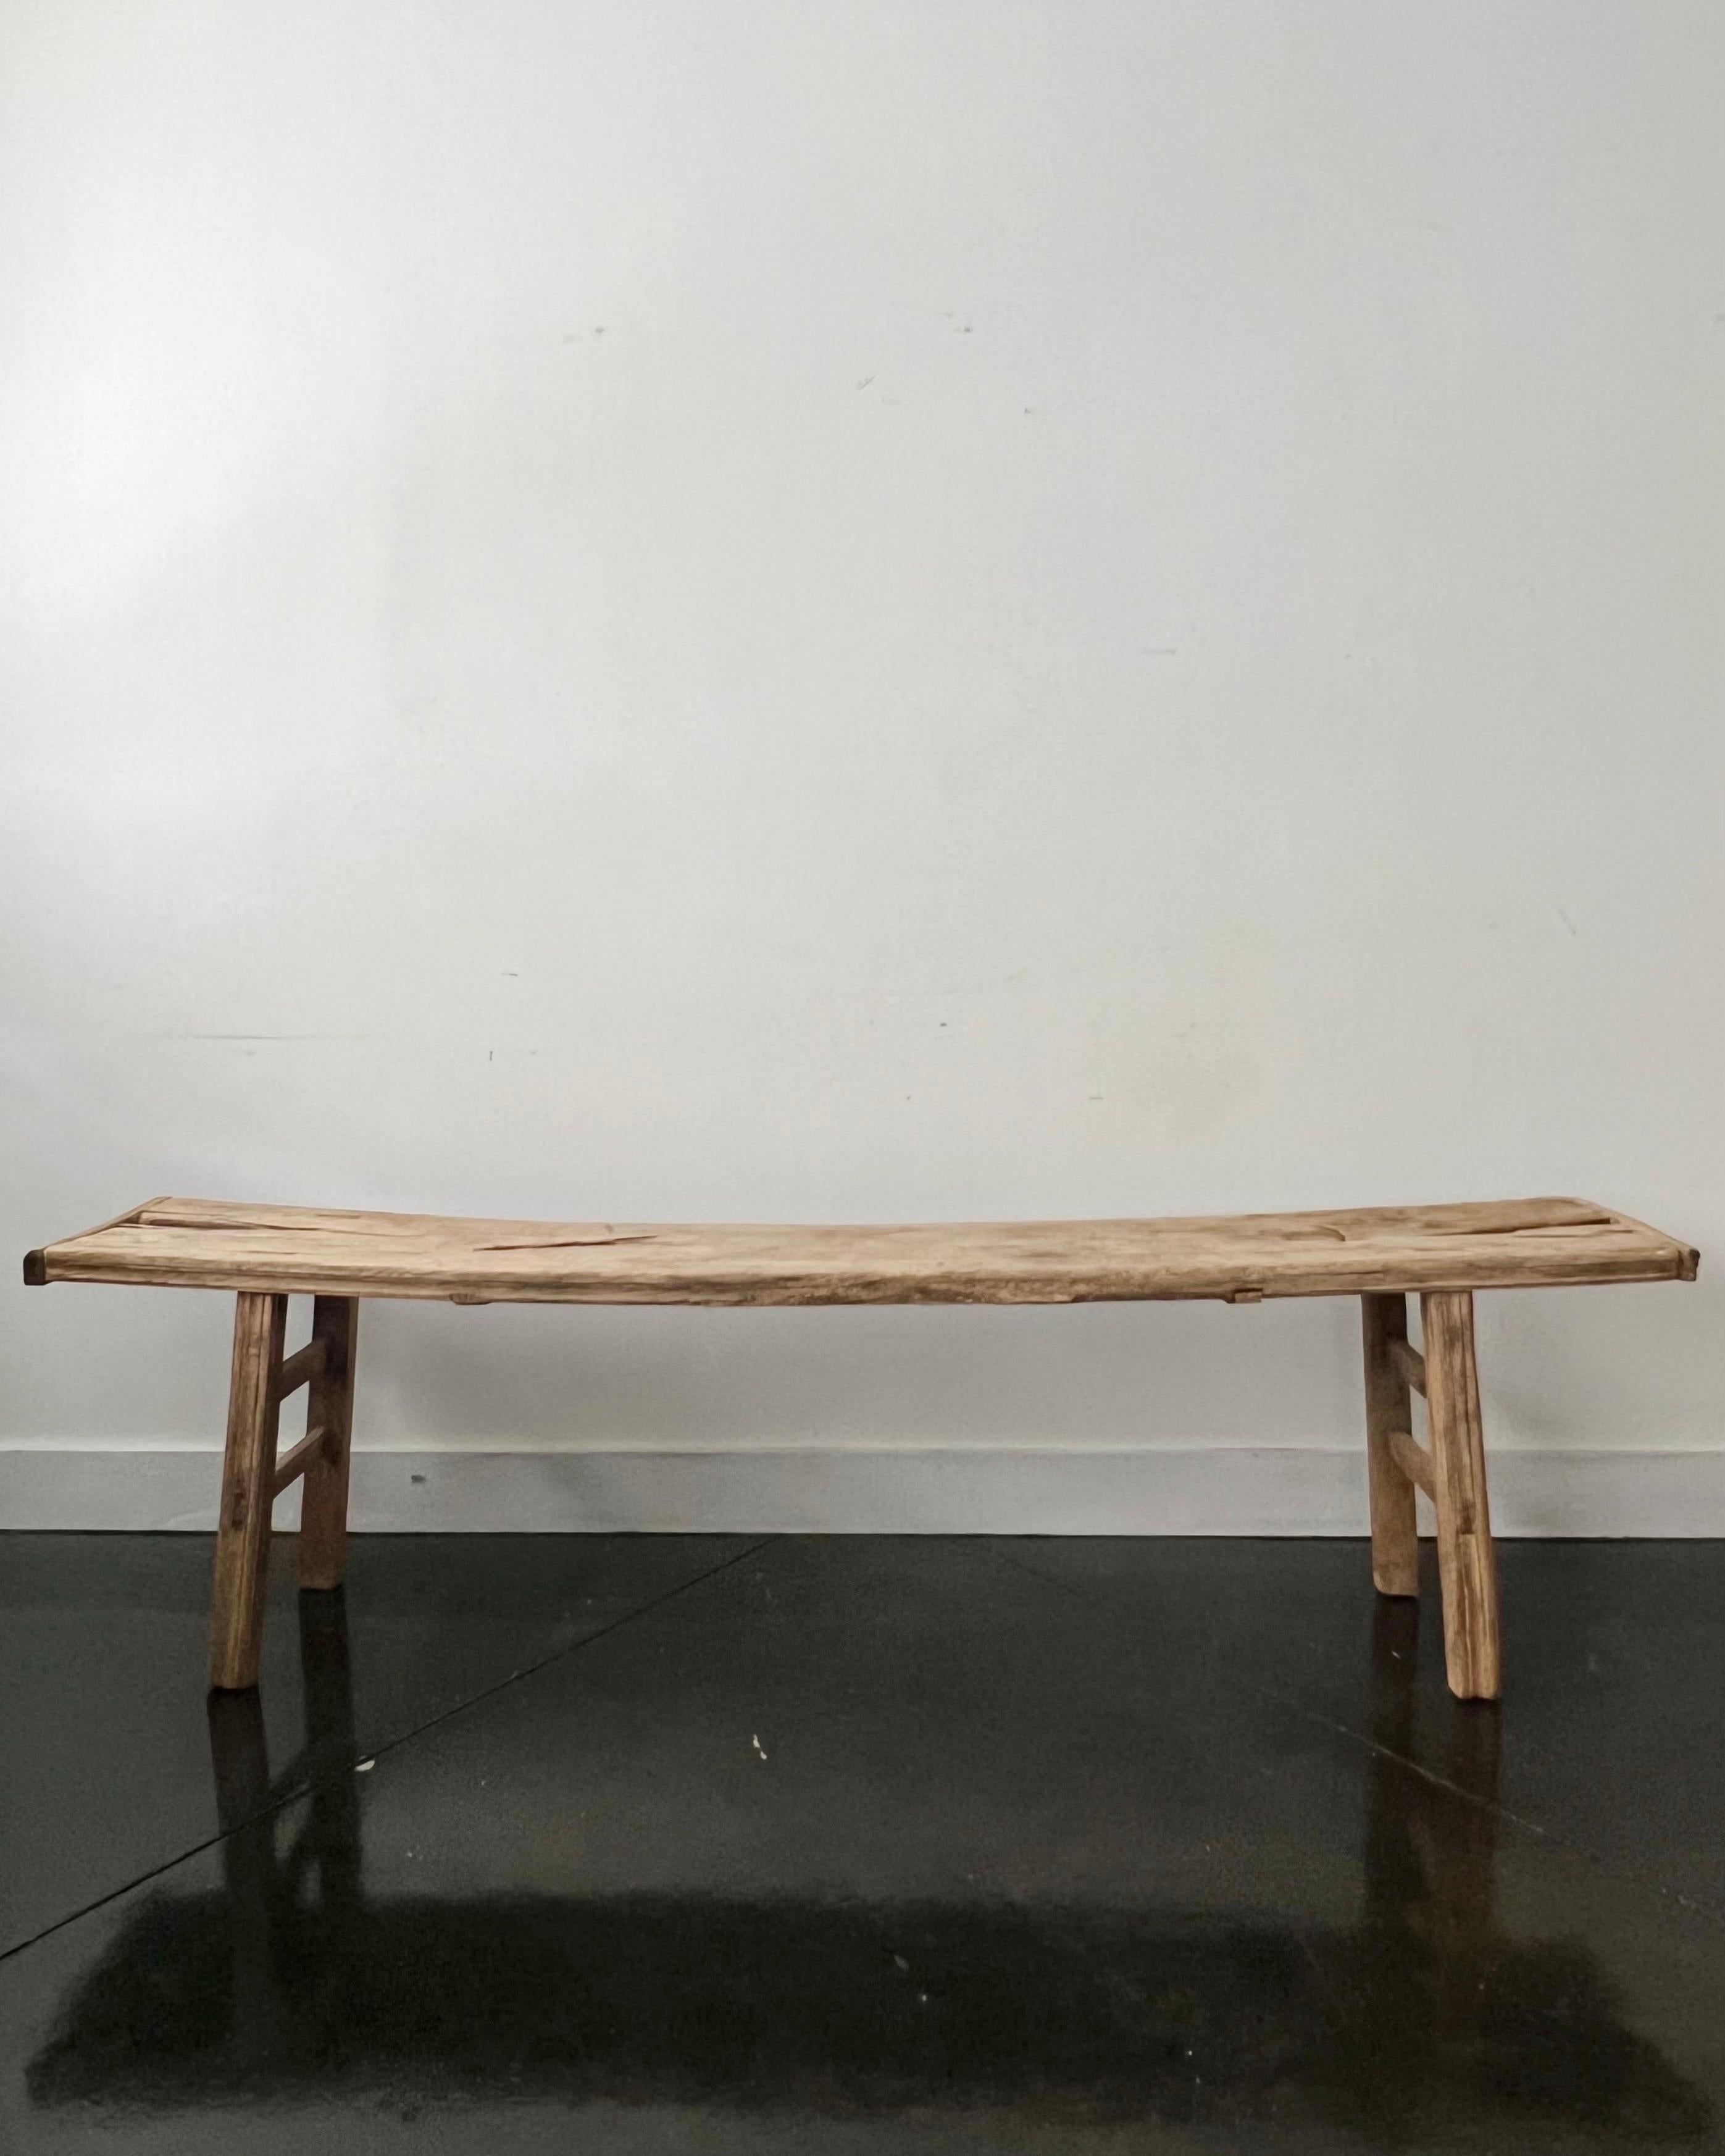 Banc/table rustique simple du 18e siècle, fait à la main en France, avec un large plateau en bois patiné par les intempéries, soutenu par quatre pieds robustes.
Il s'agit d'un bon état ancien avec l'âge, les petites fissures, les bosses, les